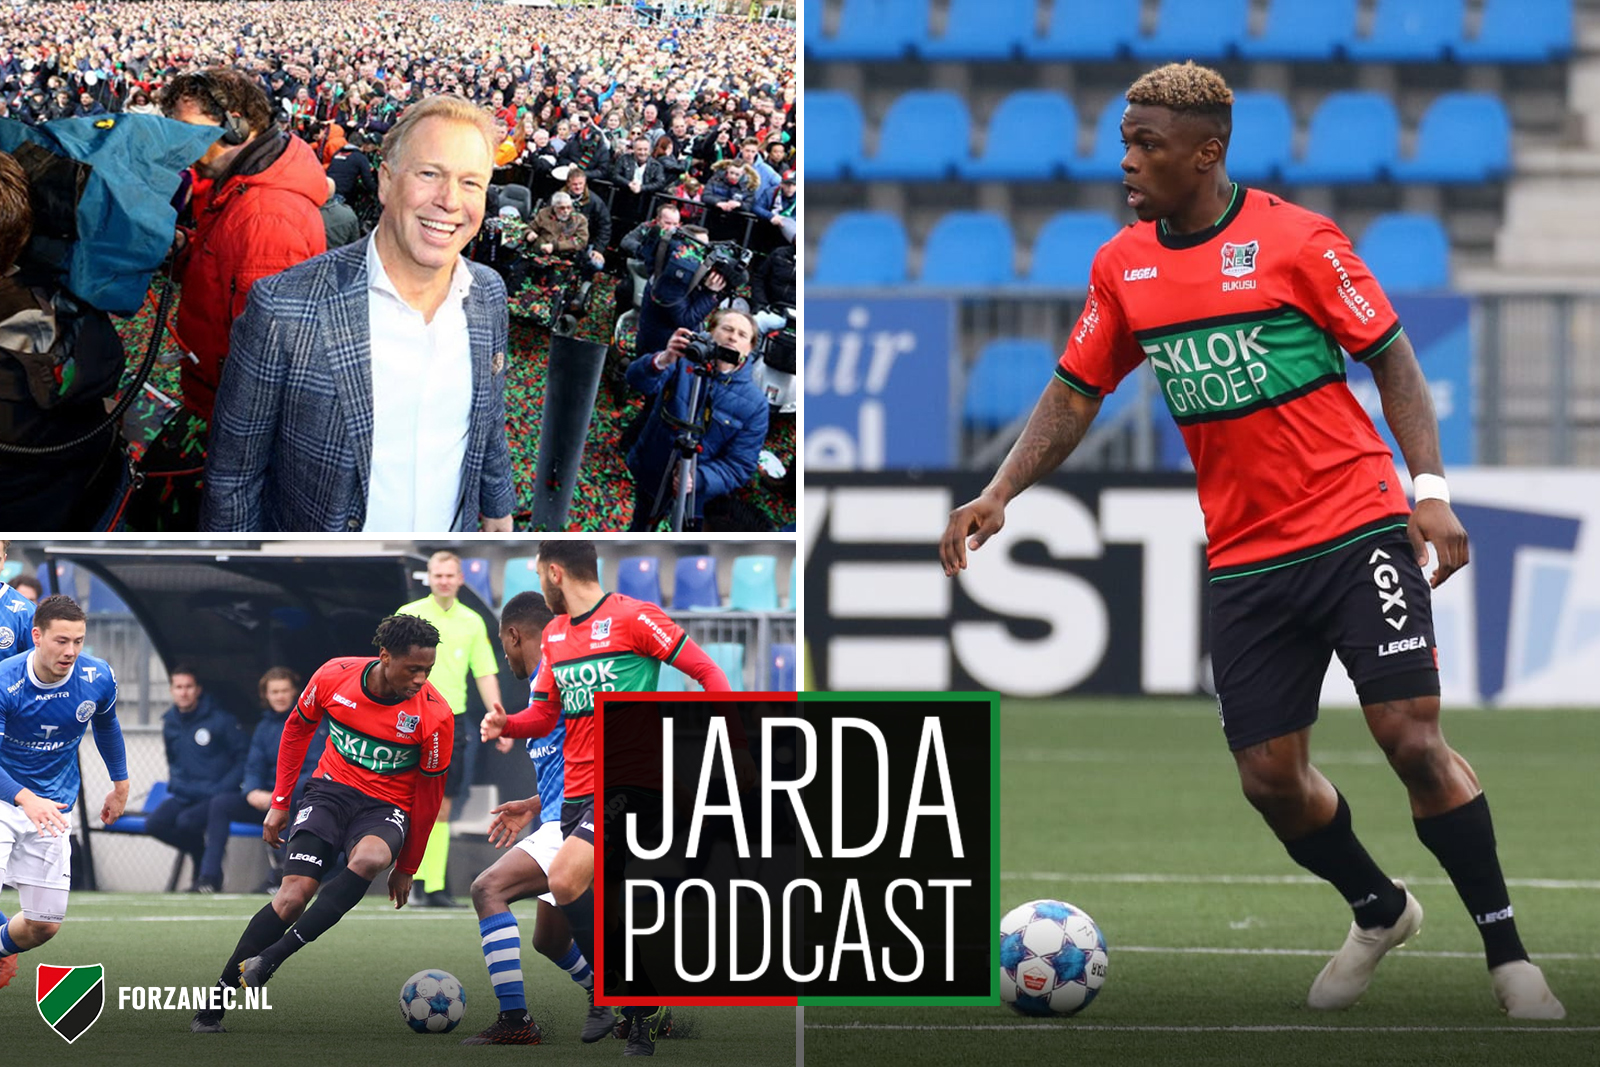 Jarda Podcast #57: Doorpakken met NEC en dromen van versterking